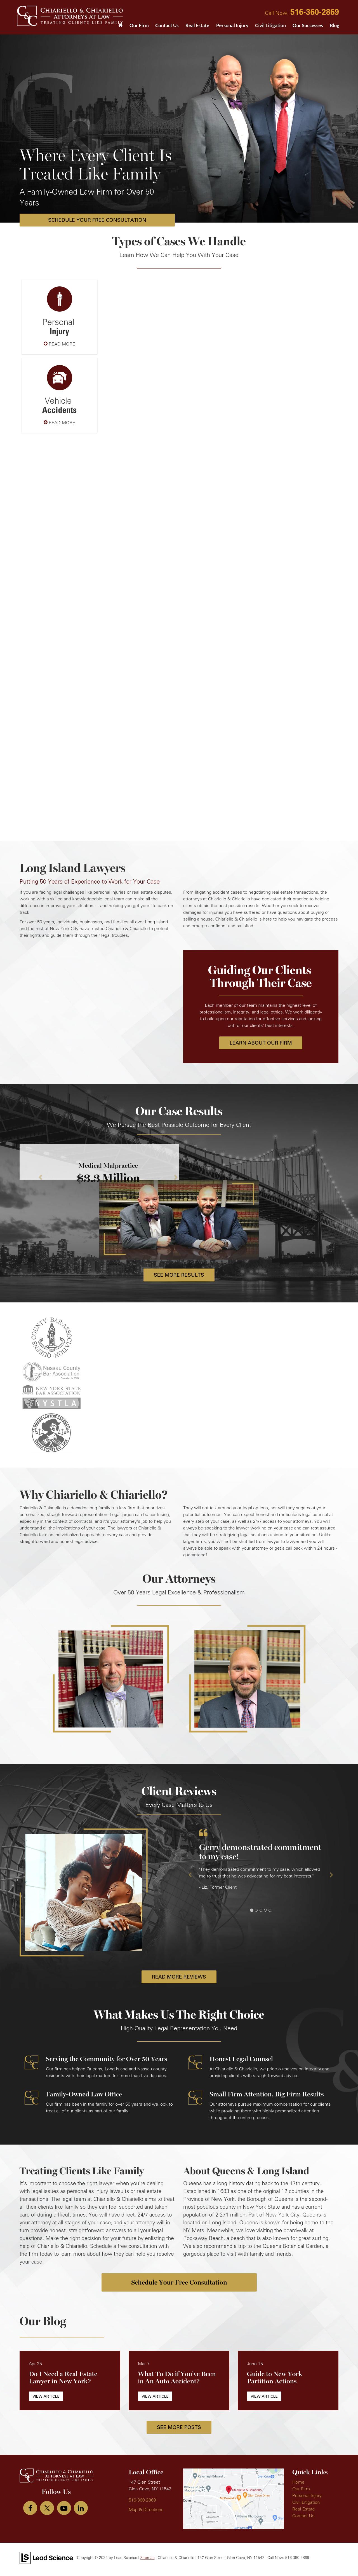 Chiariello & Chiariello - Forest Hills NY Lawyers